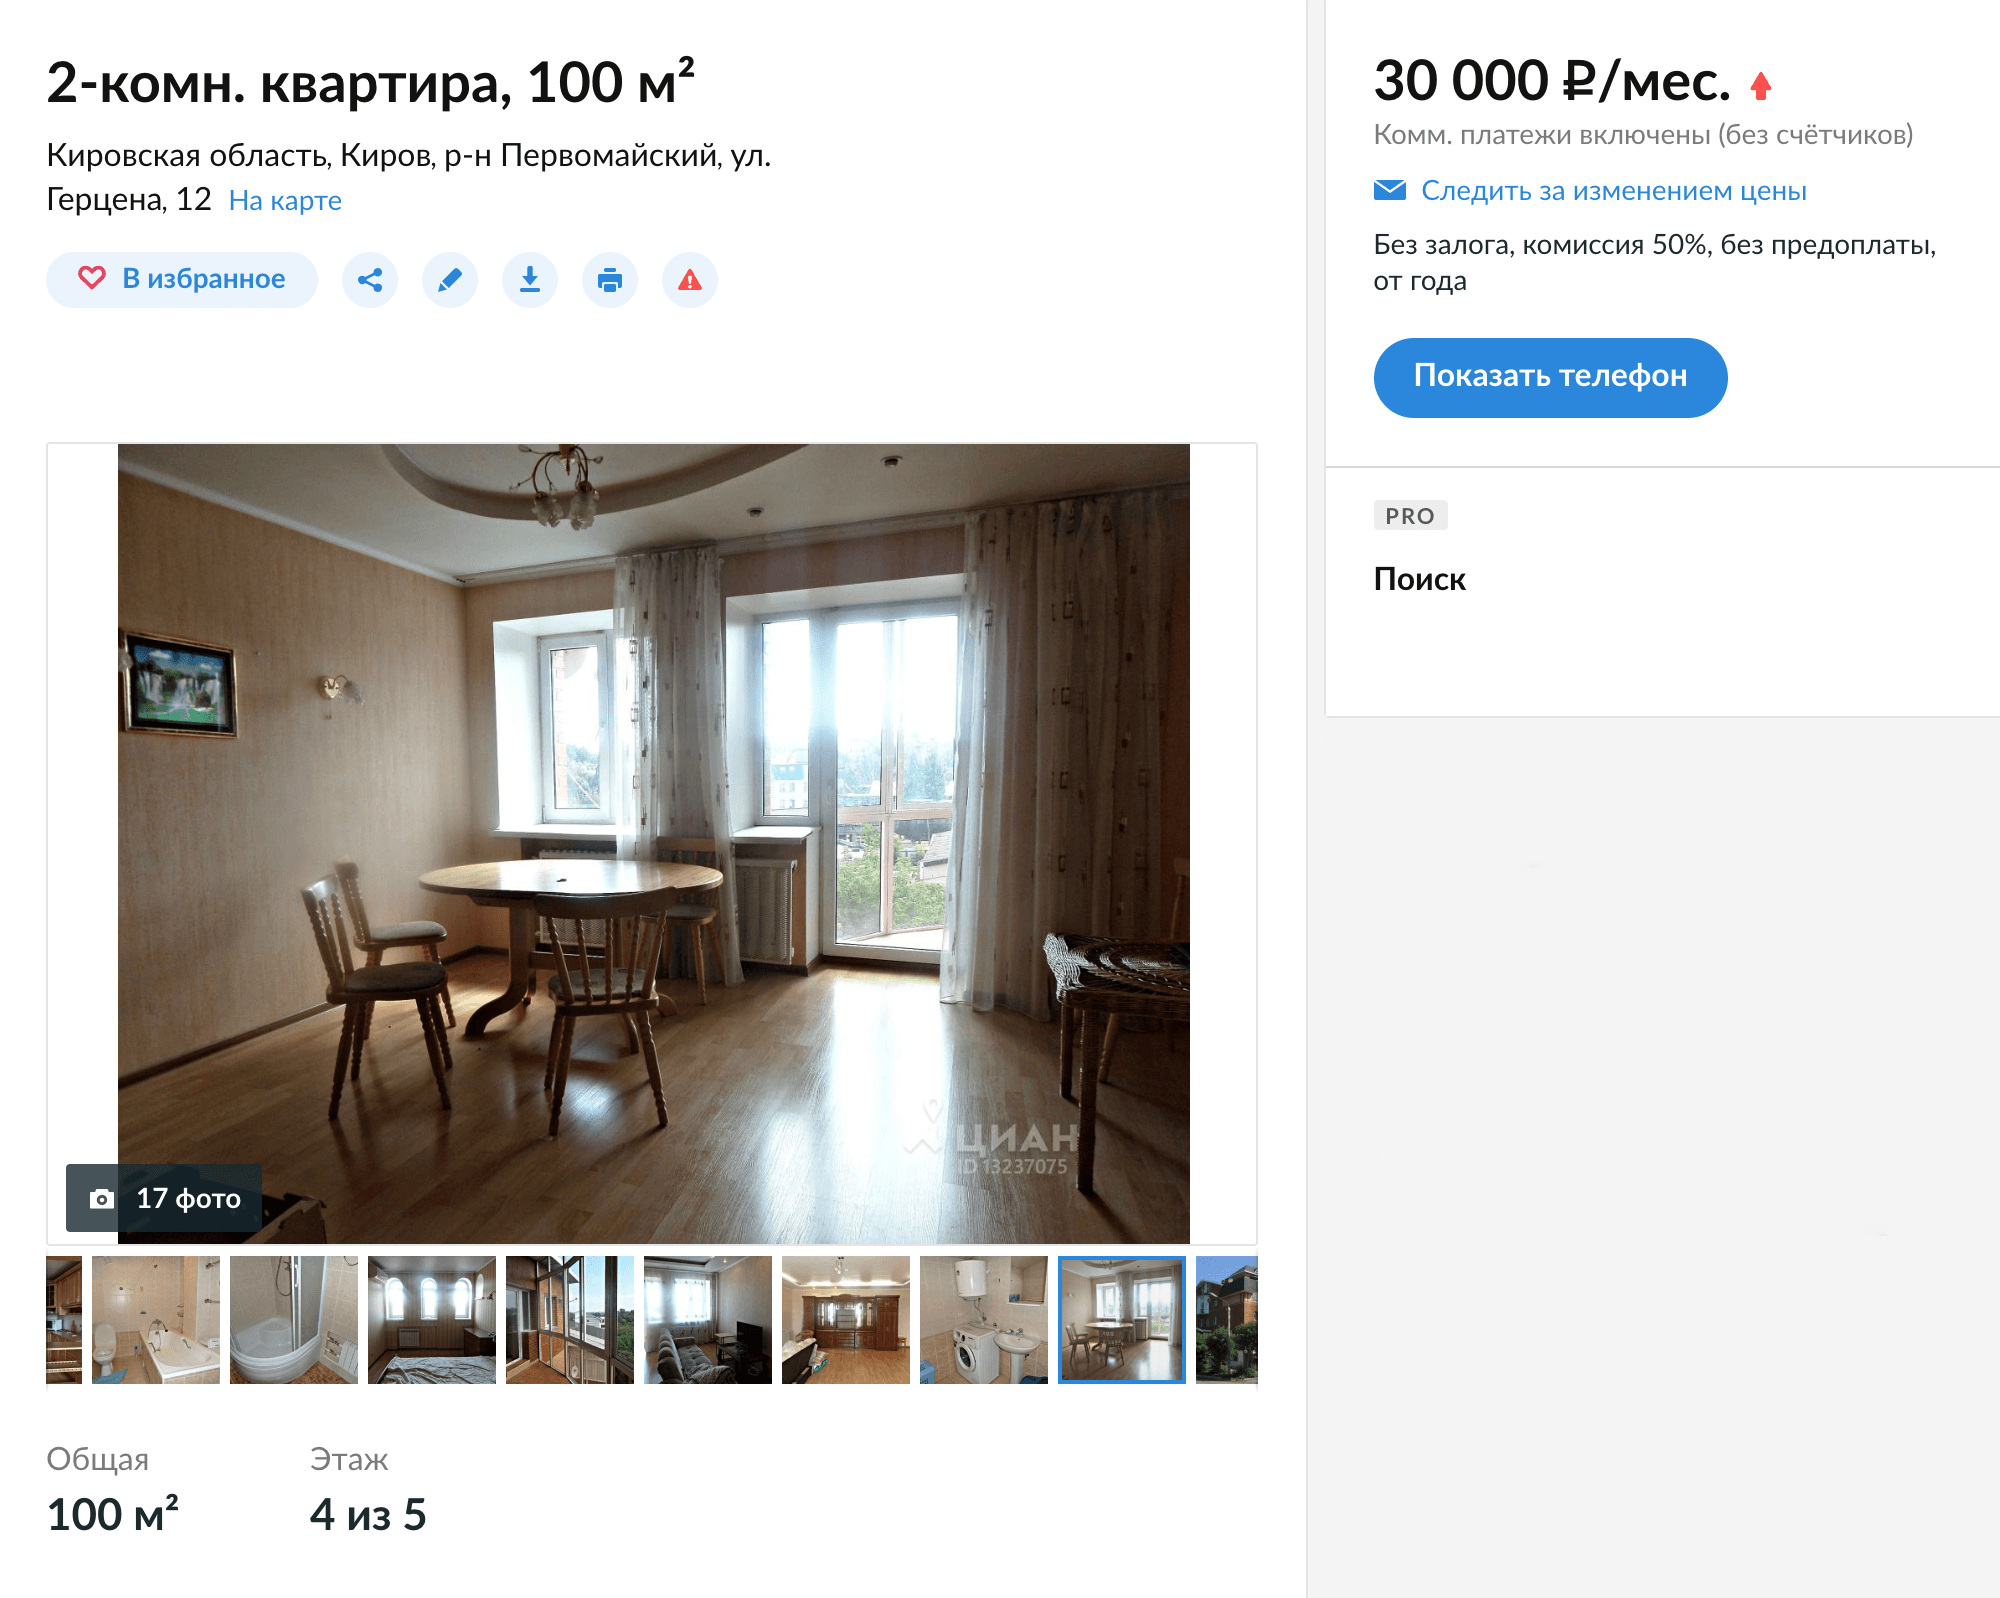 Прекрасная квартира в Кирове с огромным балконом, двумя санузлами и деревянной мебелью в элитном доме — «всего» за 30 000 ₽